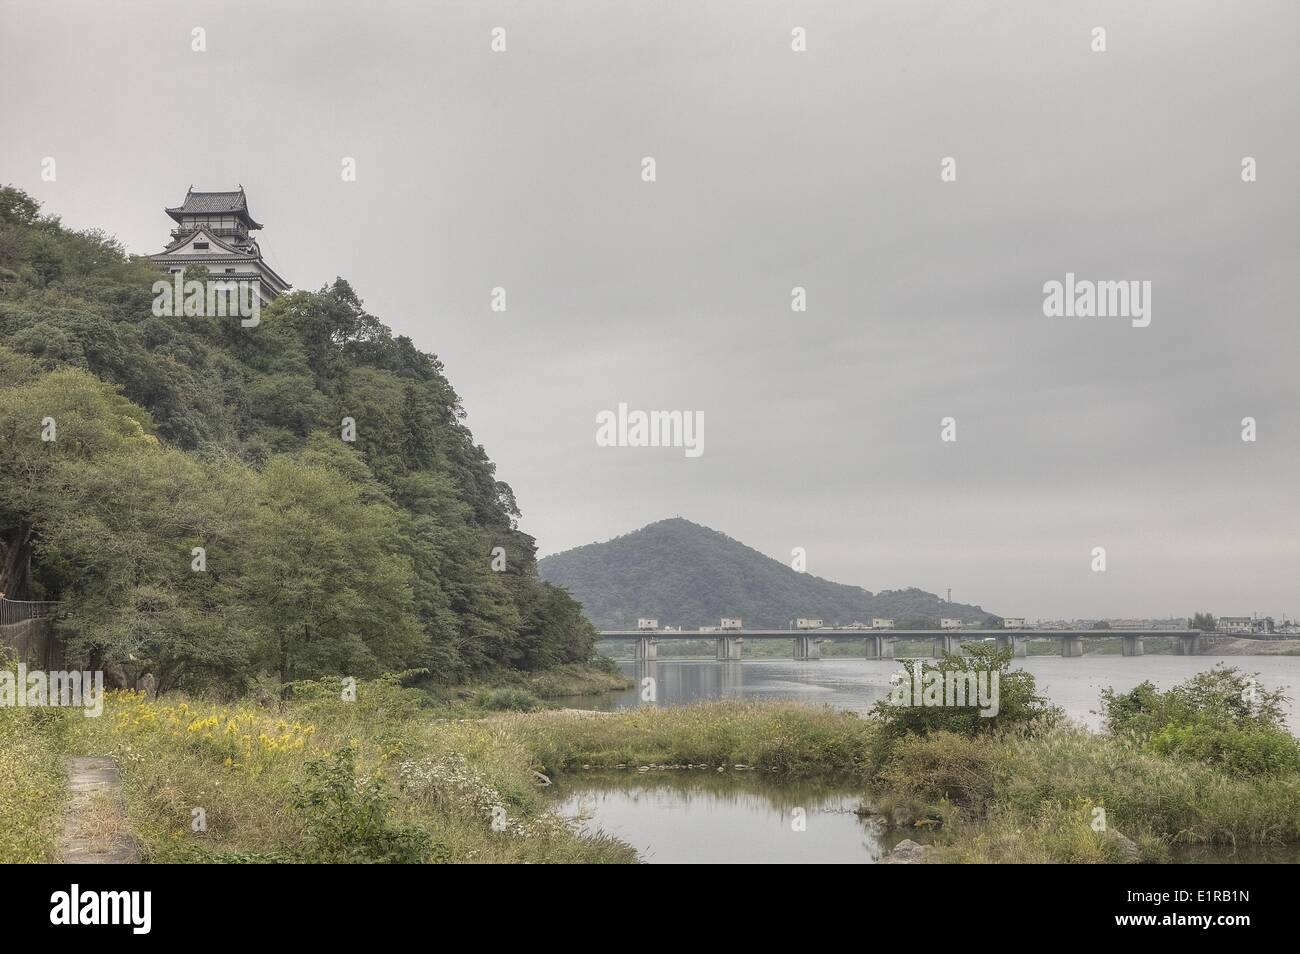 Le château d'Inuyama est l'un des plus anciens châteaux du Japon. Il supervise la rivière Kiso. Banque D'Images